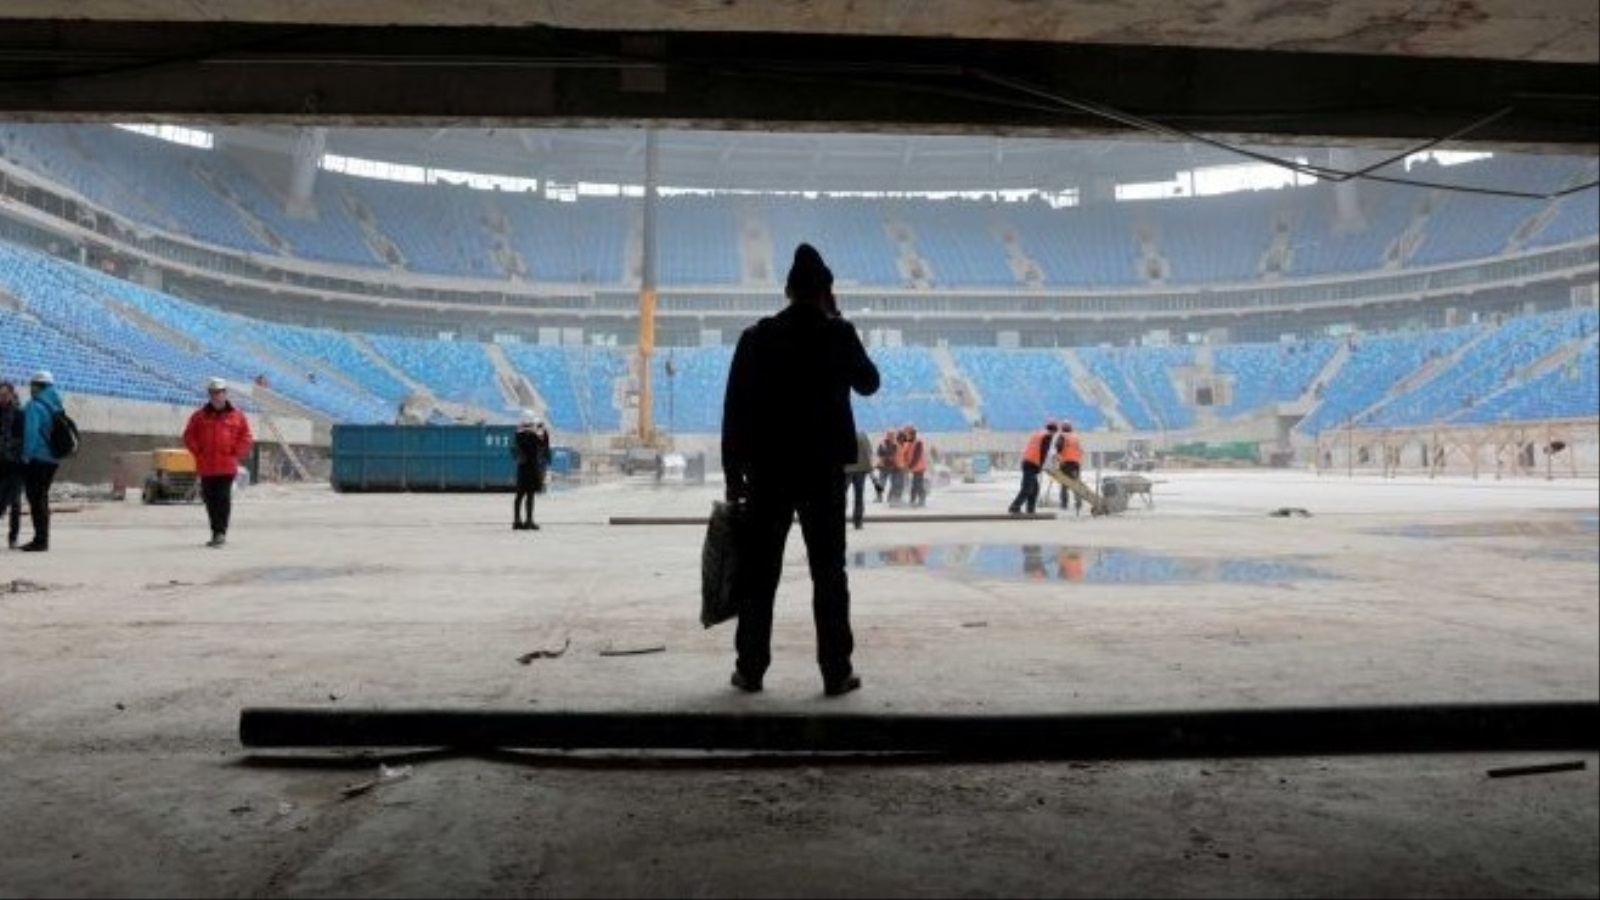 الأعمال في ملعب زينيت بمدينة بطرسبيرج استعدادًا لاستضافة المونديال وكأس القارات